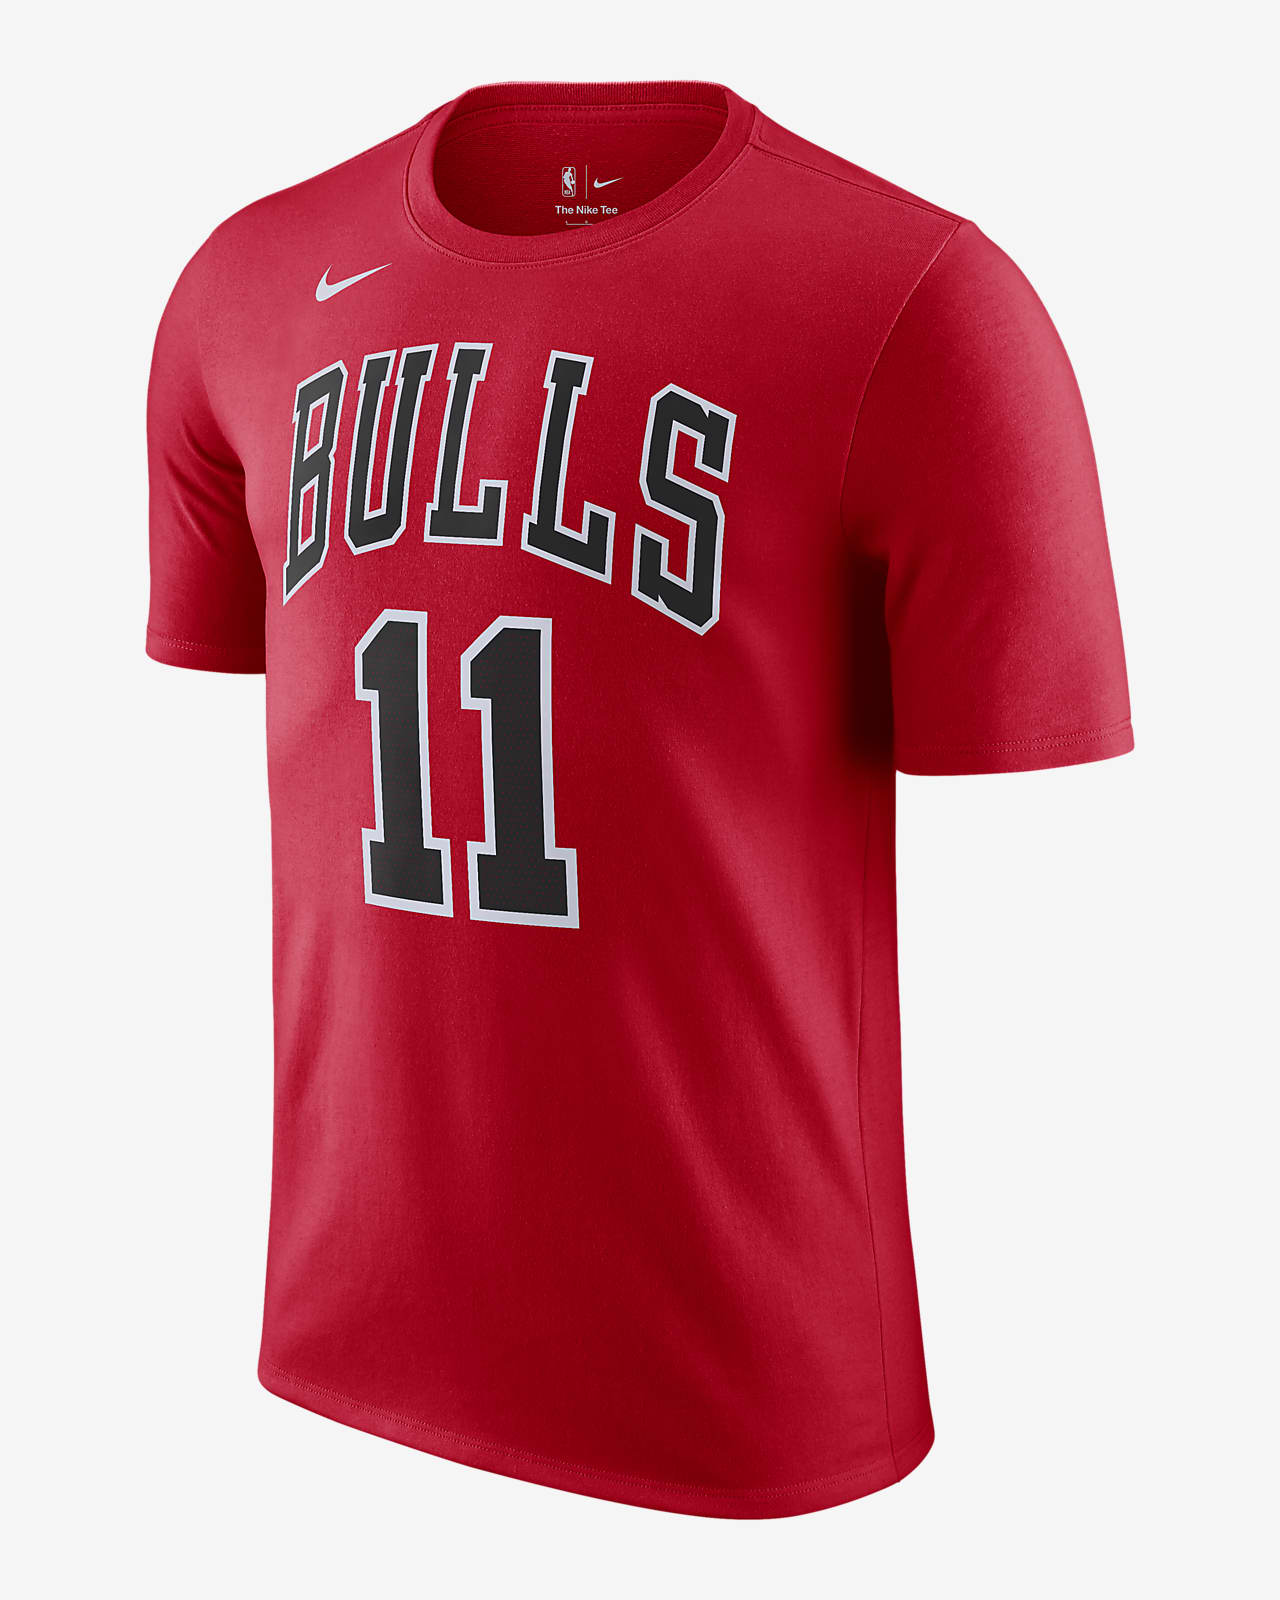 Ανδρικό T-Shirt Nike NBA Σικάγο Μπουλς